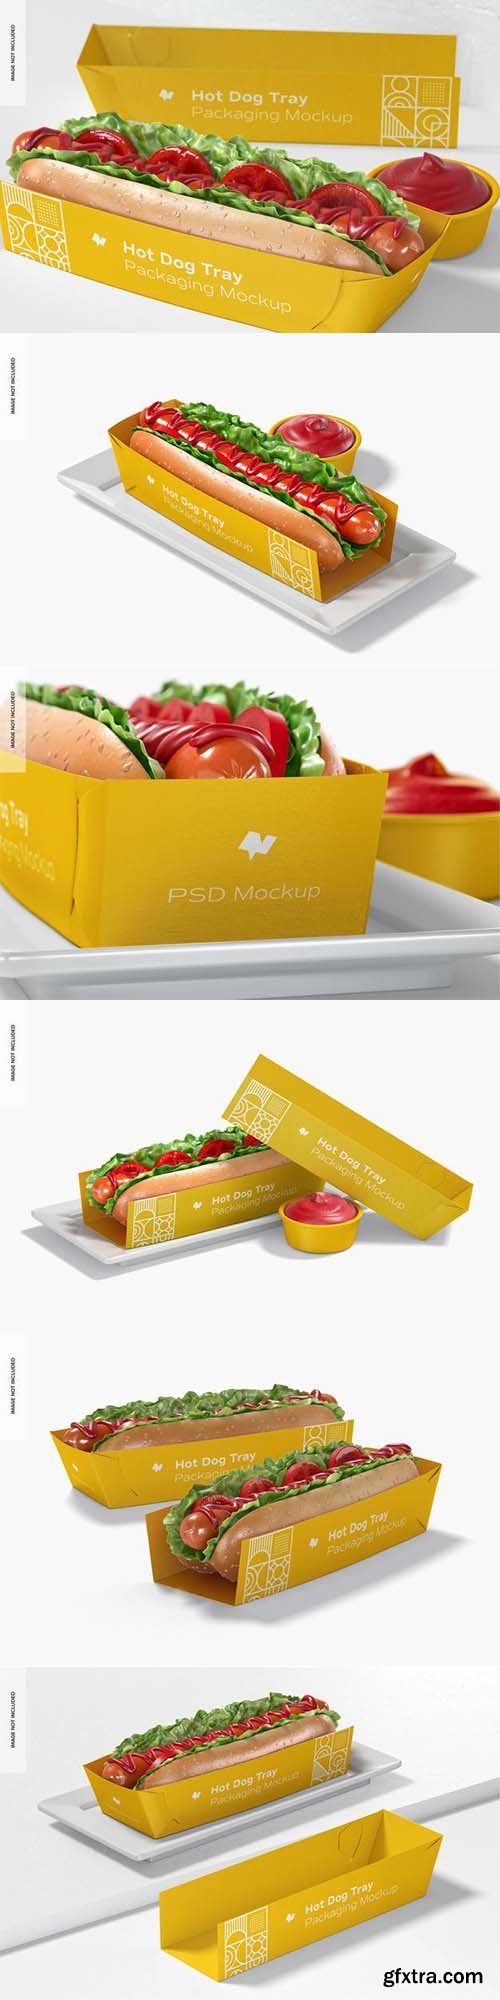 Hot dog tray packaging mockup